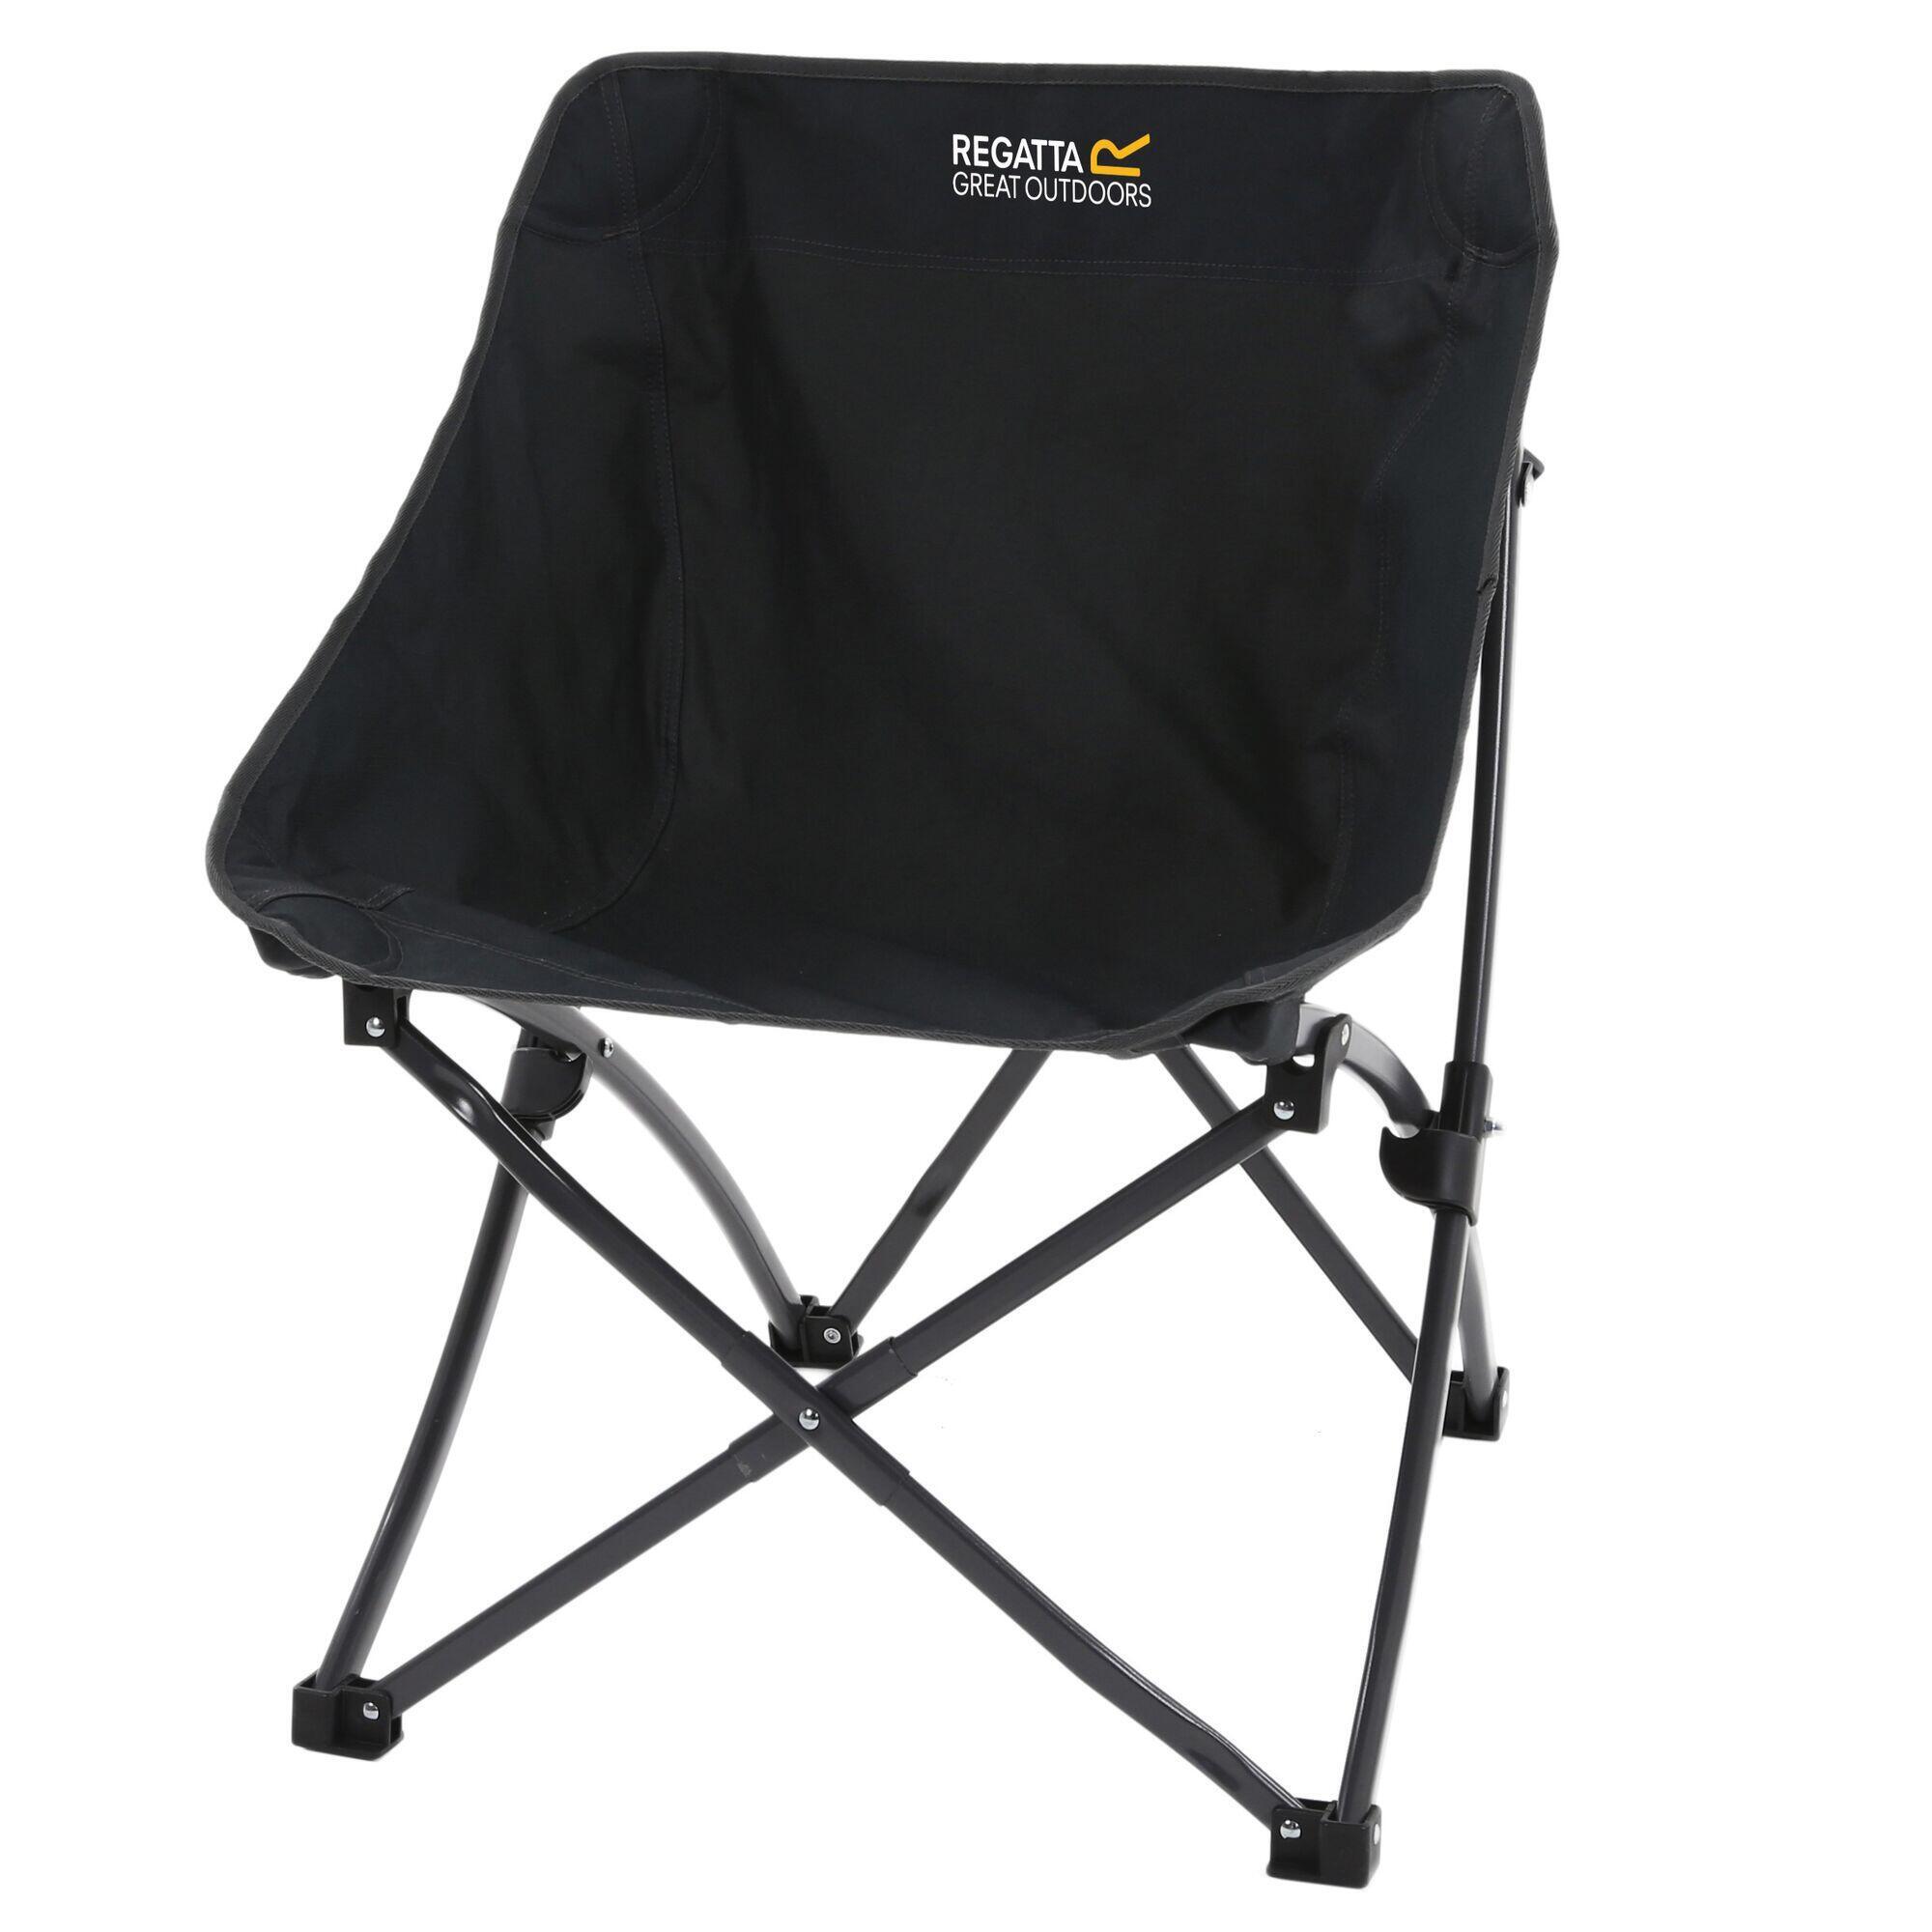 Стул складной Regatta Forza Pro Adult для кемпинга, черный складной стул vebreda премиум виниловый metal 4 упаковки белый пляжный стул для кемпинга